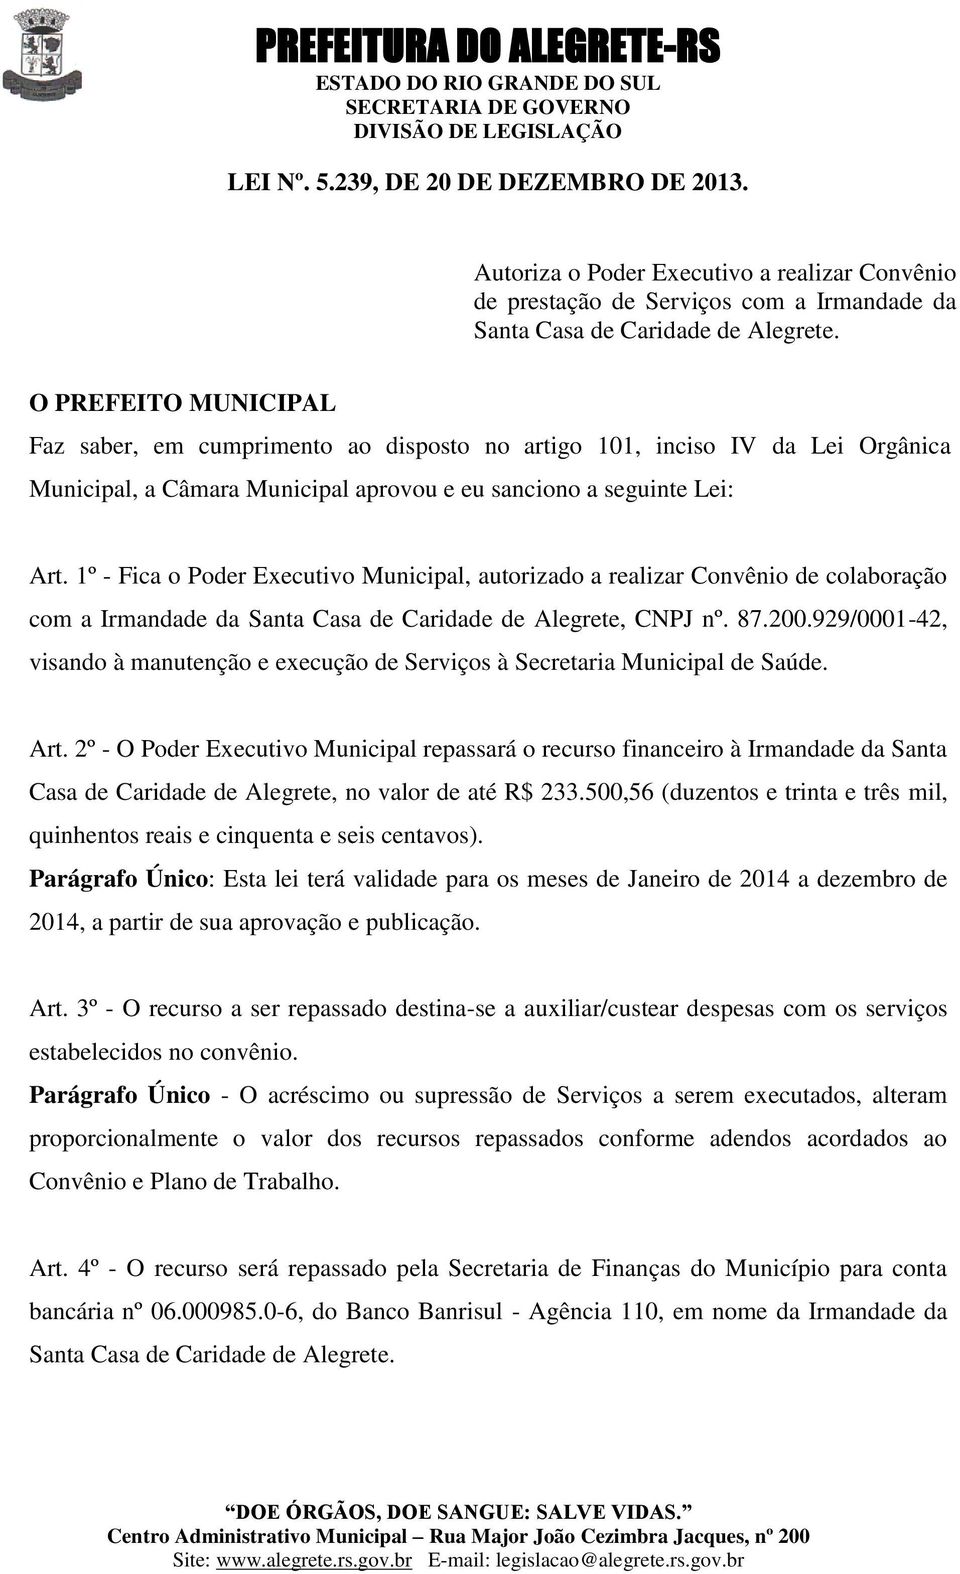 1º - Fica o Poder Executivo Municipal, autorizado a realizar Convênio de colaboração com a Irmandade da Santa Casa de Caridade de Alegrete, CNPJ nº. 87.200.